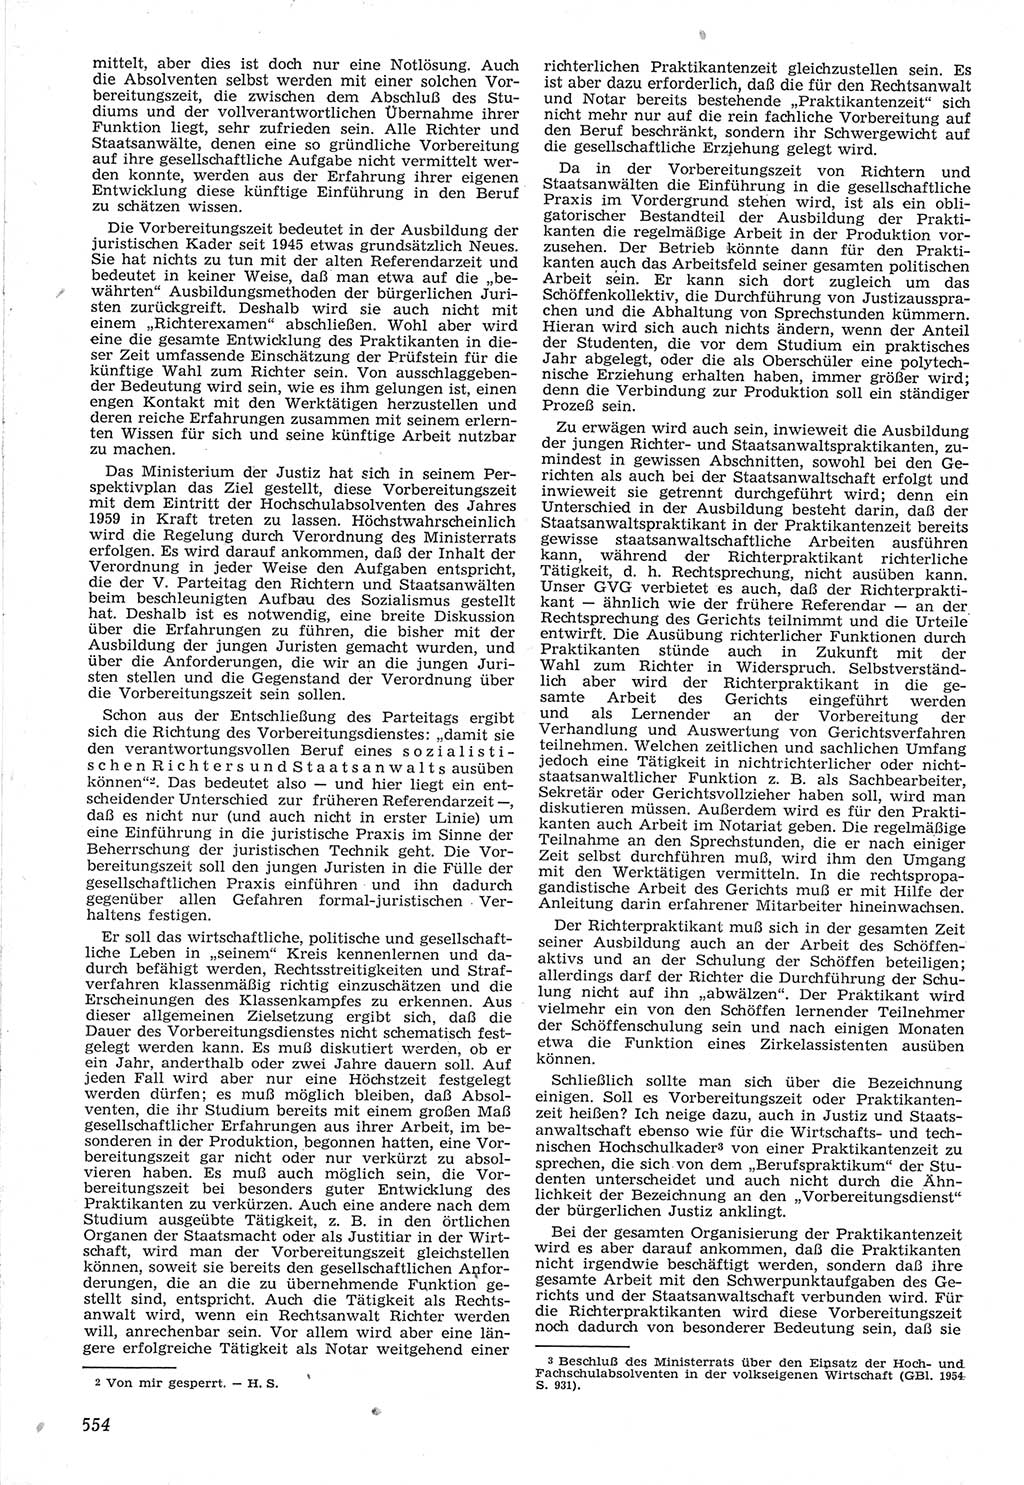 Neue Justiz (NJ), Zeitschrift für Recht und Rechtswissenschaft [Deutsche Demokratische Republik (DDR)], 12. Jahrgang 1958, Seite 554 (NJ DDR 1958, S. 554)